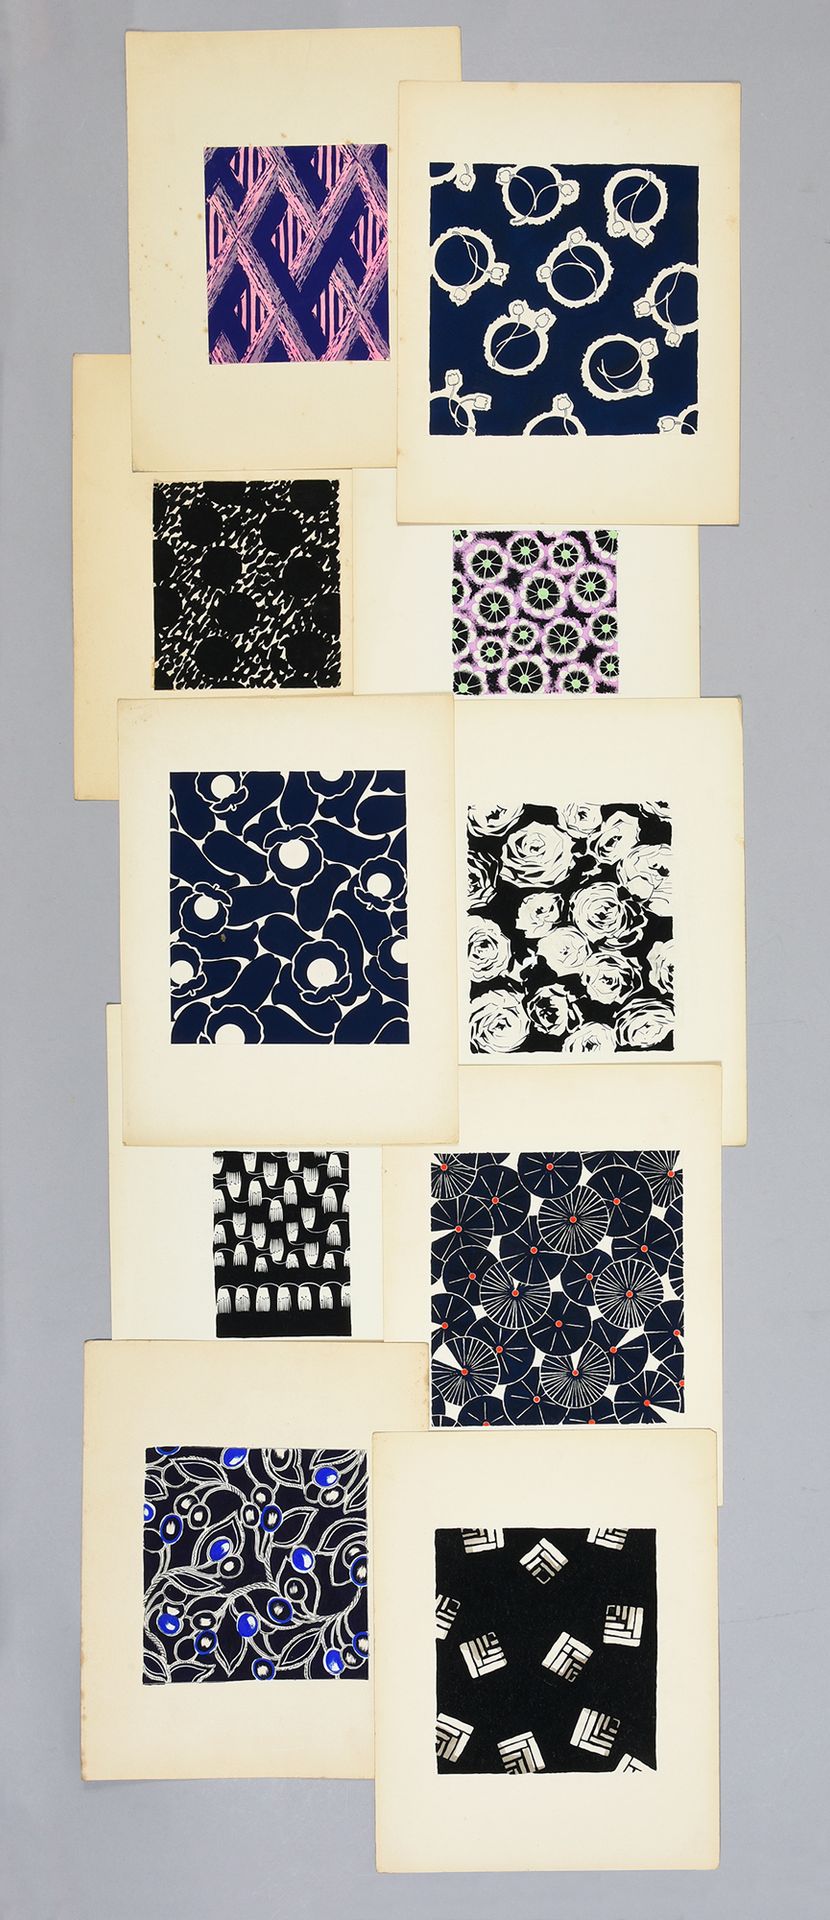 Null 一组时尚织物模型，1950-1960年左右，水粉和墨水在纸上；大部分是小规模的单色设计，包括高度风格化的花朵，几何图案和抽象，幻想，如蝴蝶结，链子。
&hellip;